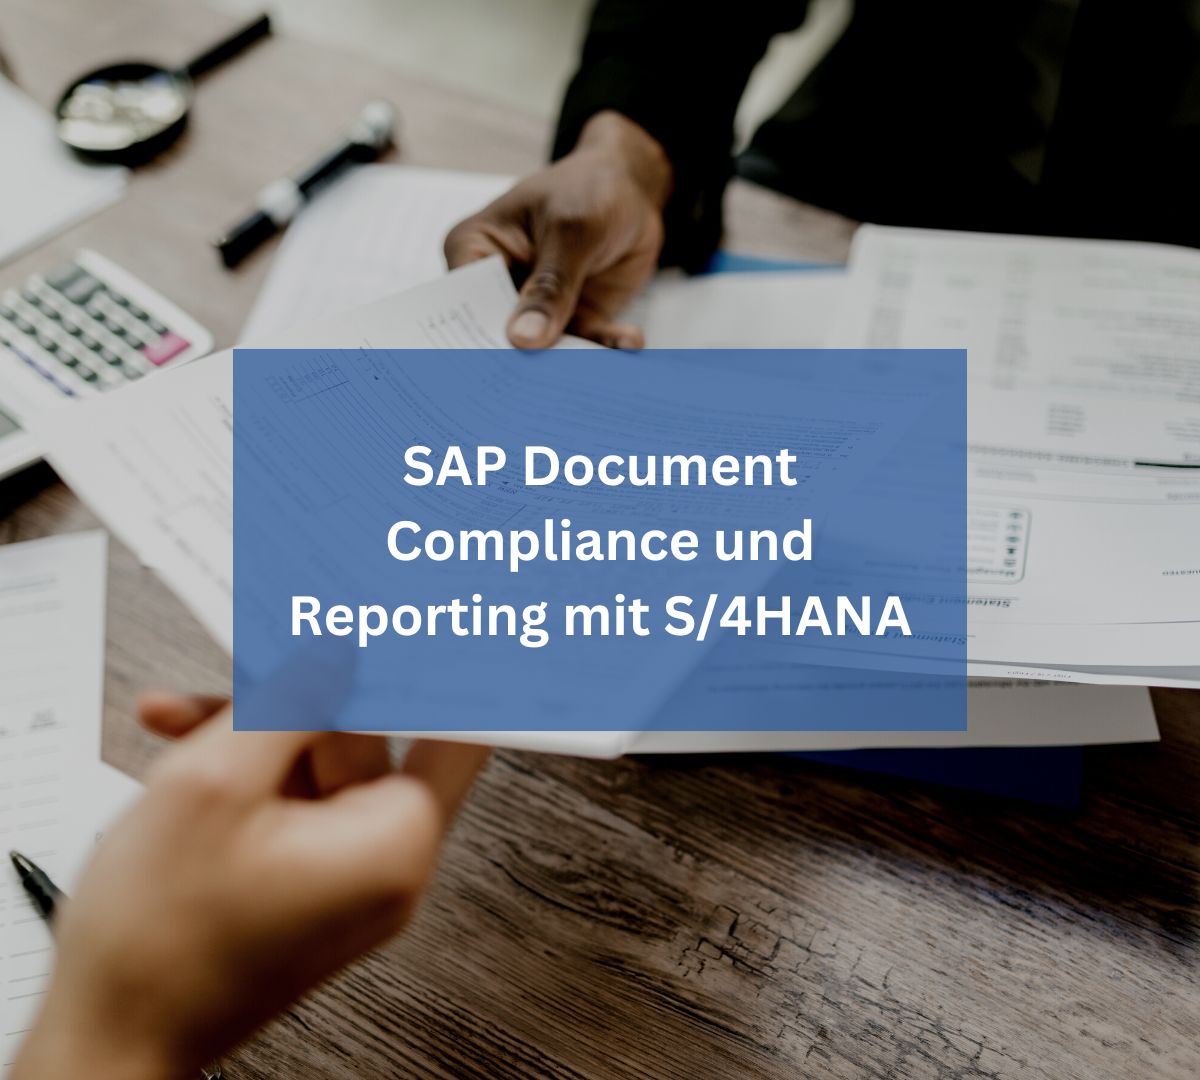 SAP Document Compliance und Reporting mit SAP S/4HANA: Eine umfassende Lösung für Ihr Unternehmen